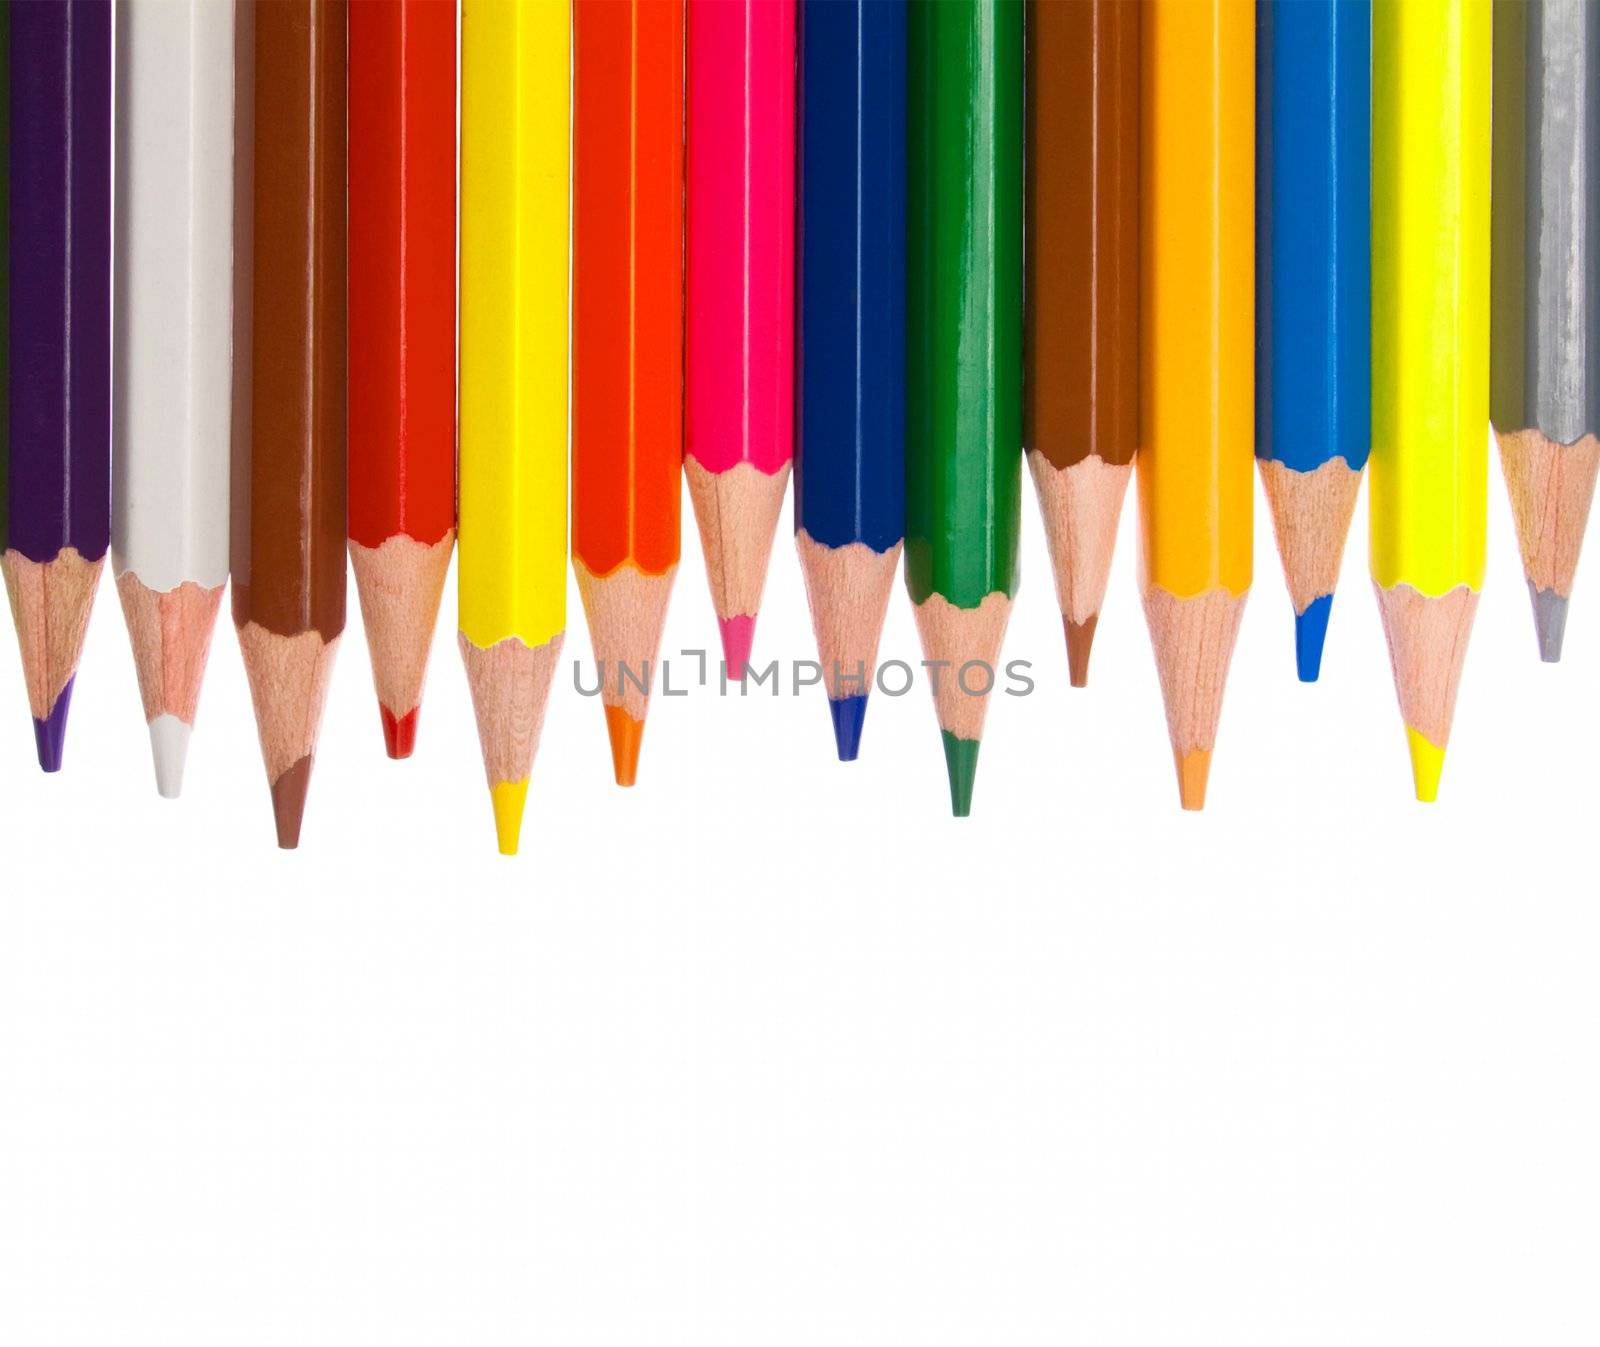 pencils by ozaiachin